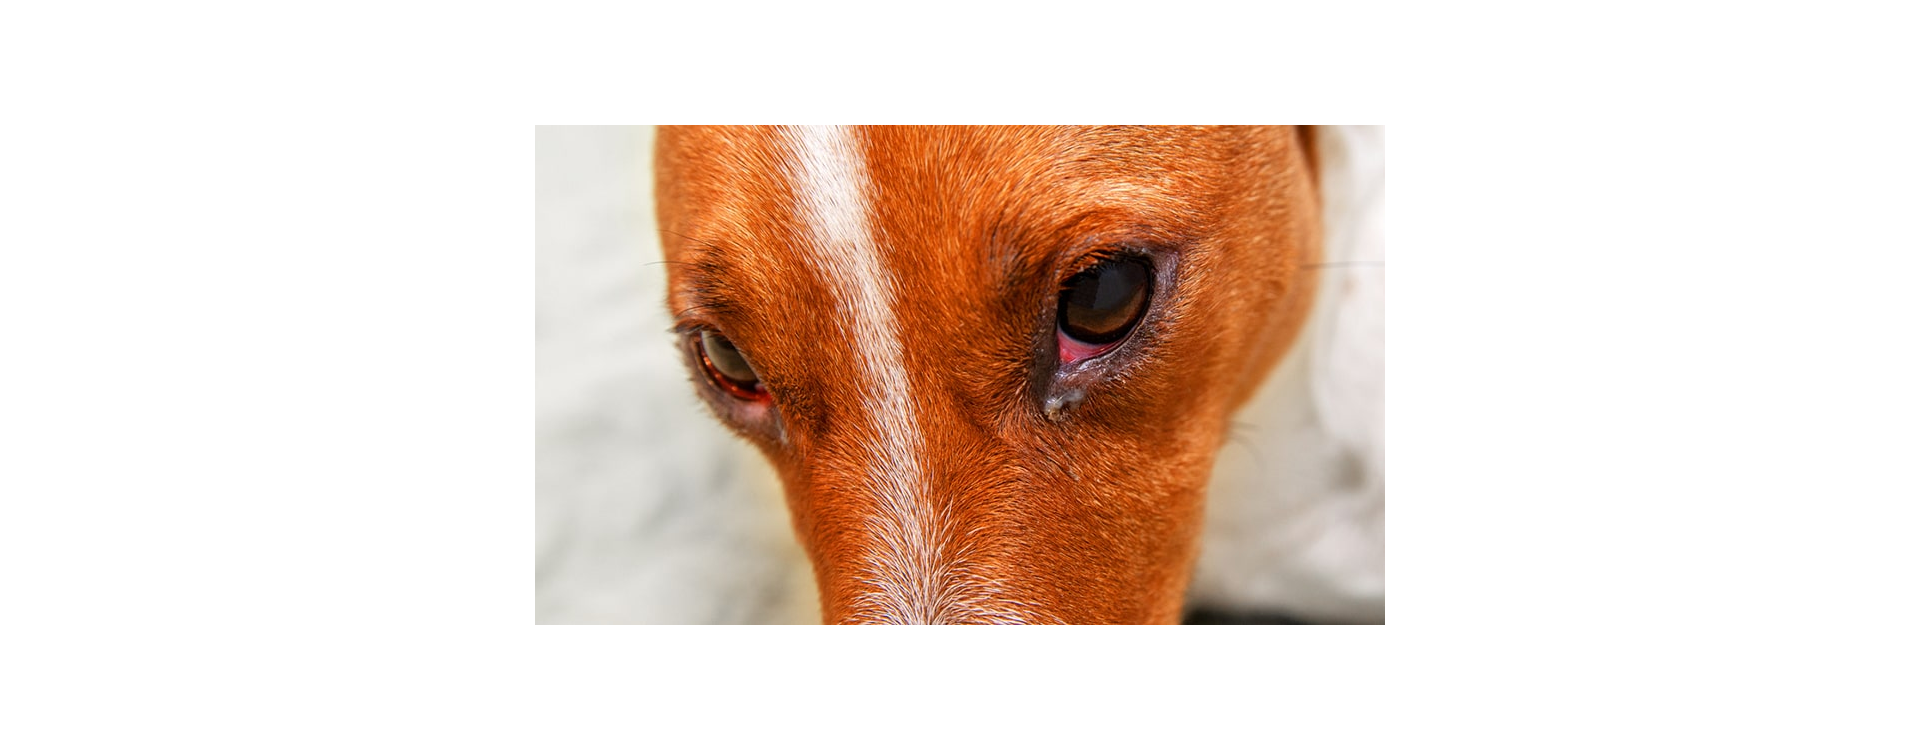 Γιατί τα μάτια του σκύλου σου είναι κόκκινα;